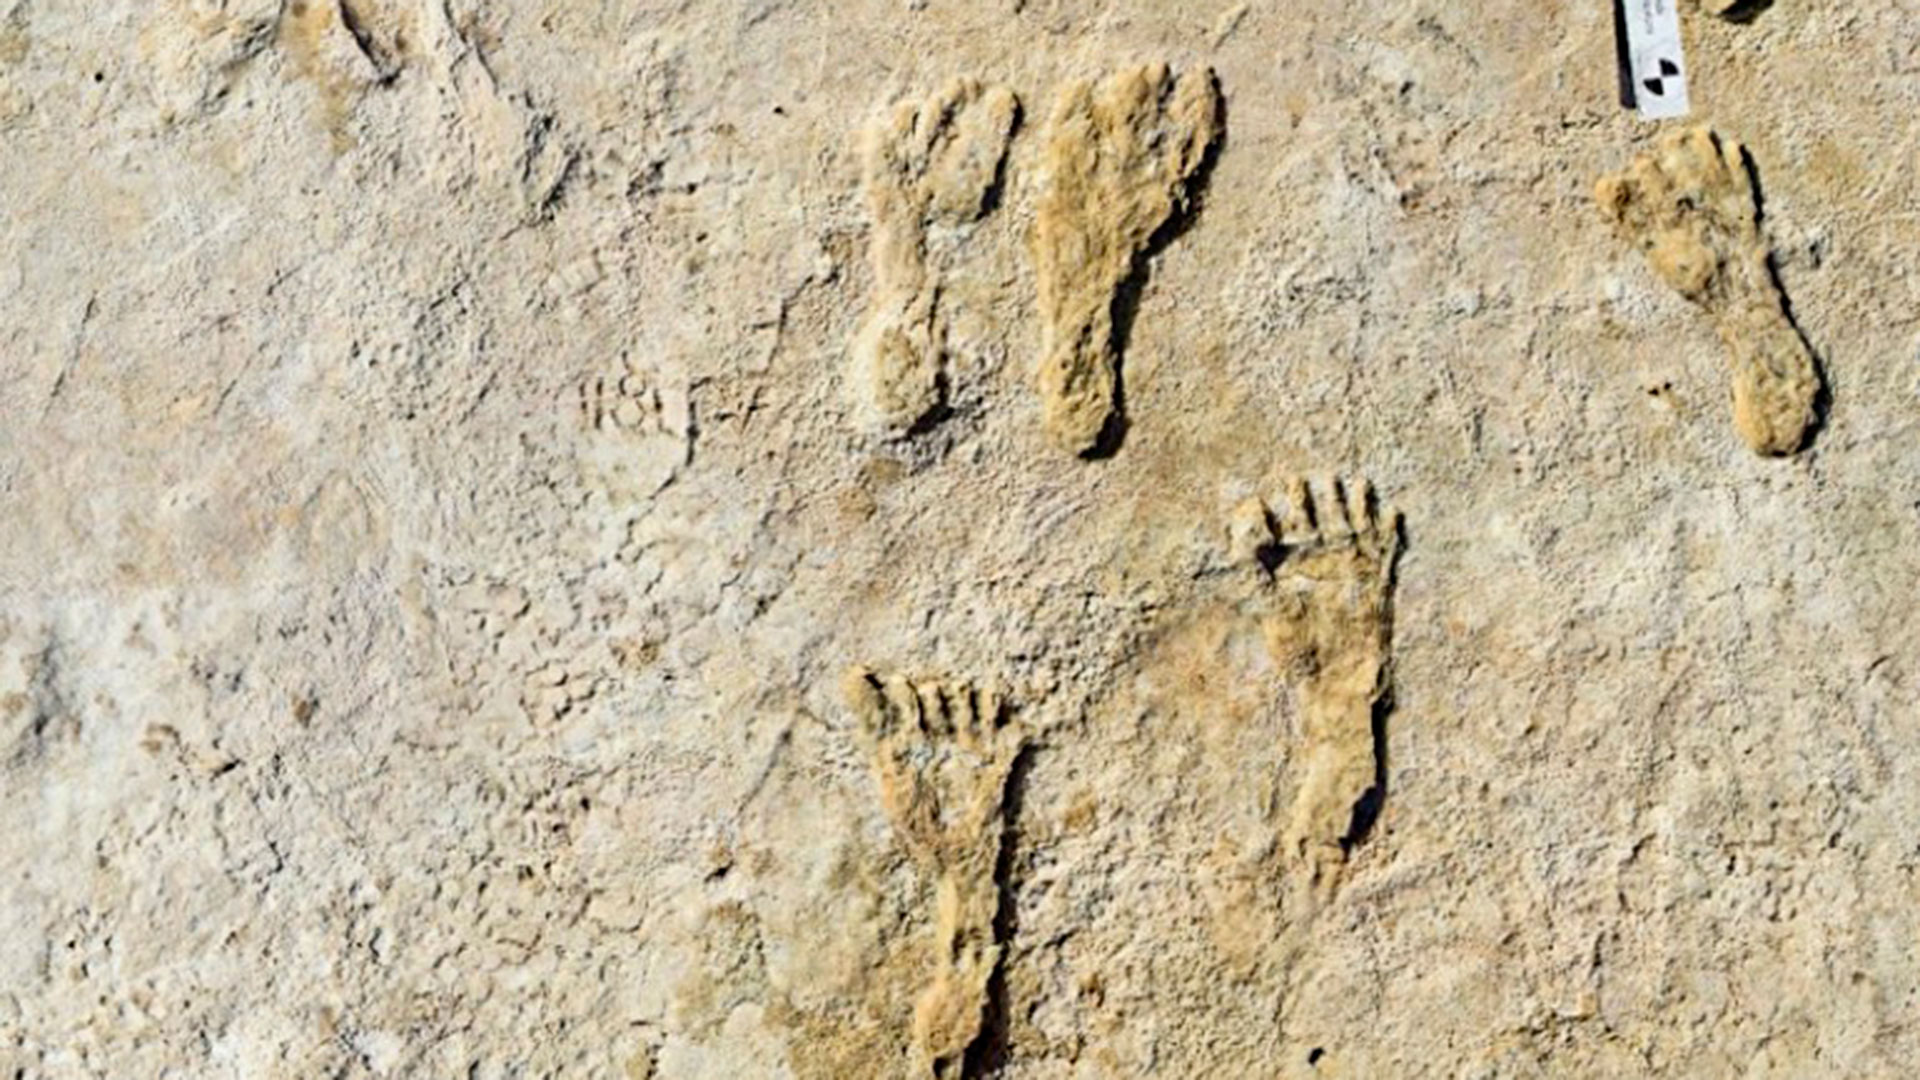 La foto muestra huellas humanas fosilizadas en el Parque Nacional White Sands en Nuevo México

[NPS via AP Photo]